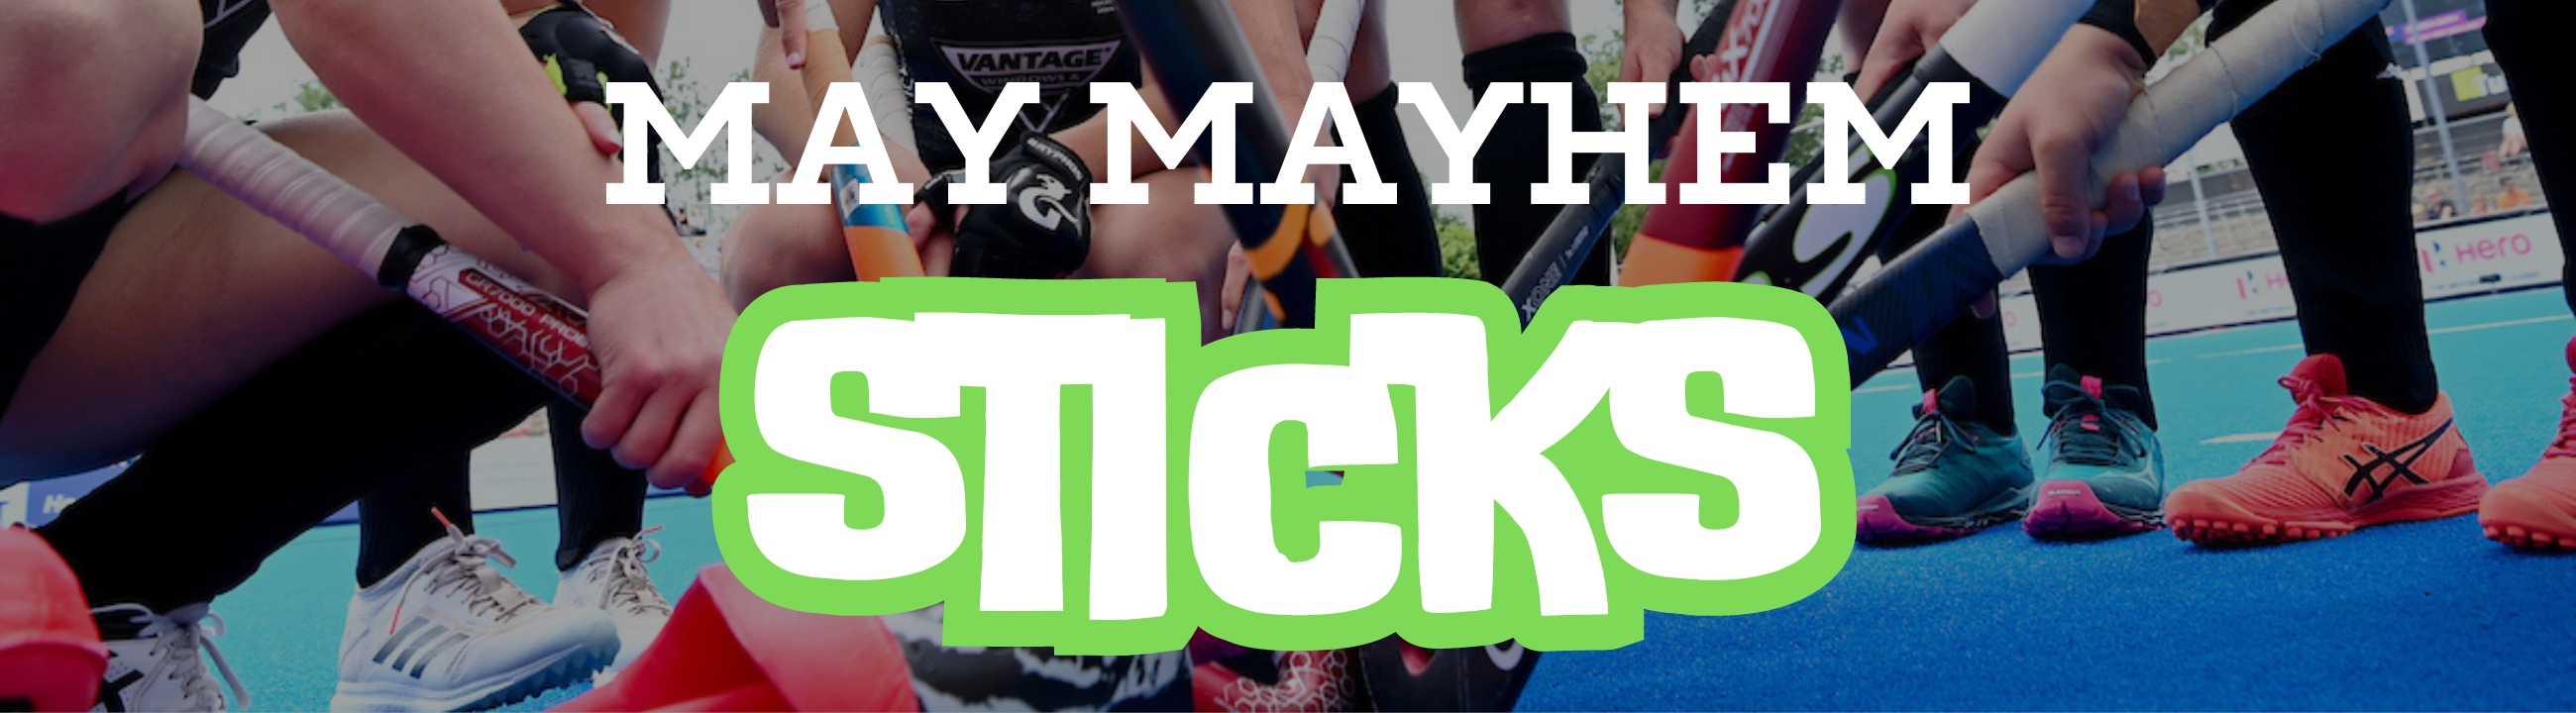 May Mayhem Sticks